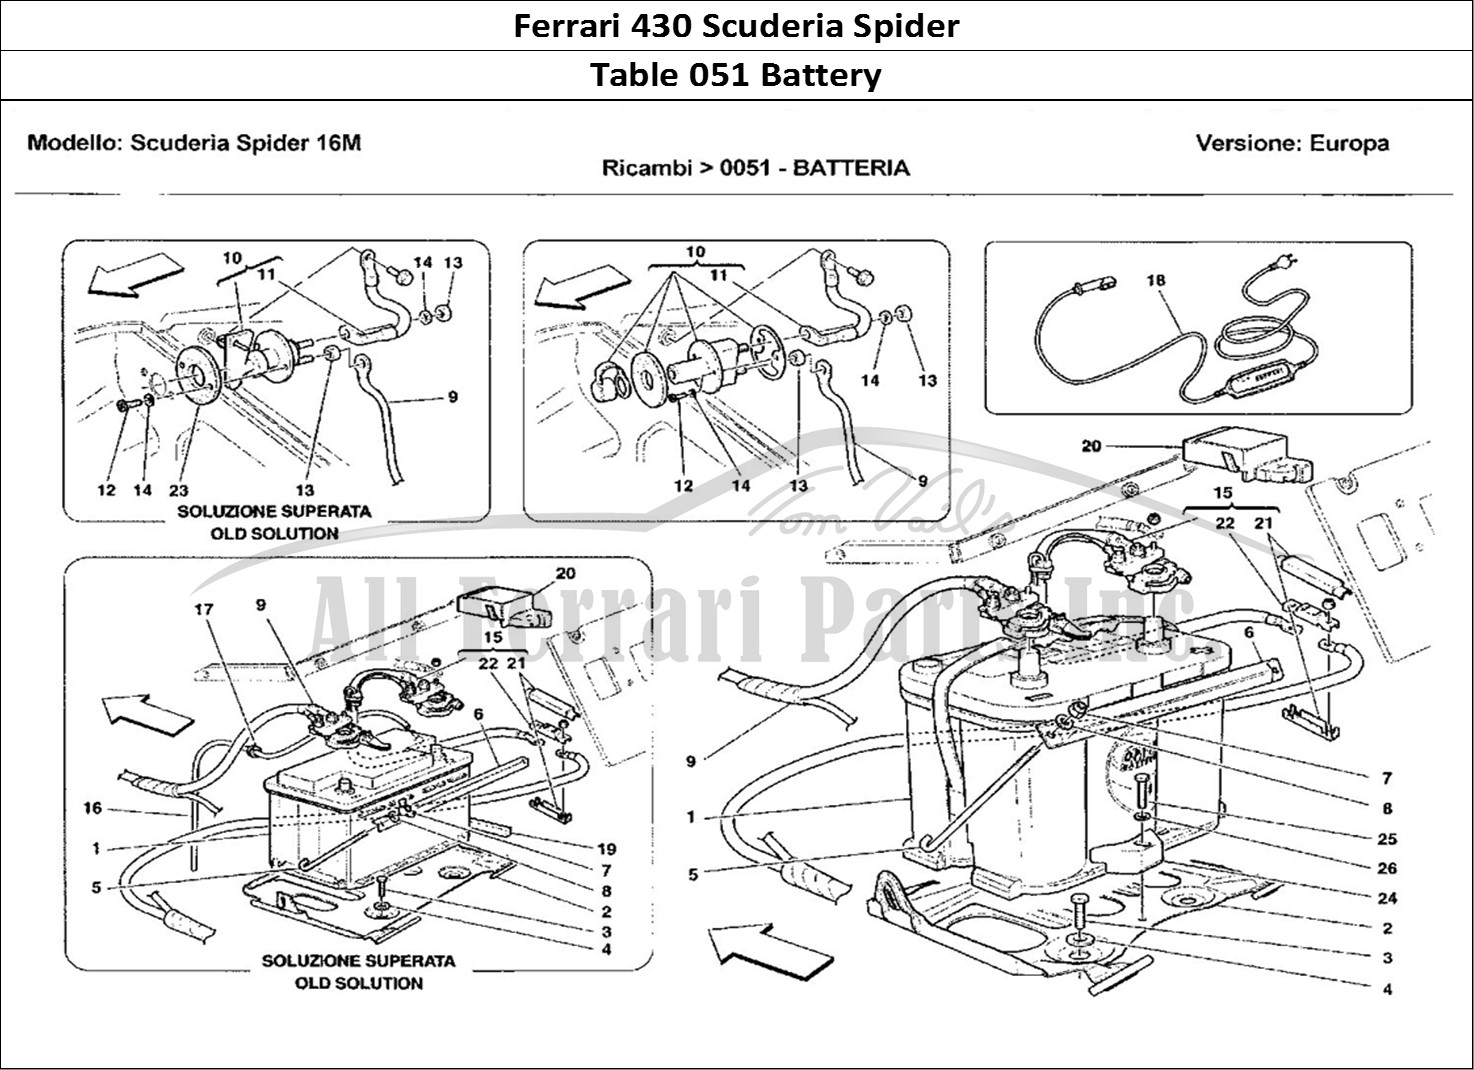 Ferrari Parts Ferrari 430 Scuderia Spider 16M Page 051 Battery